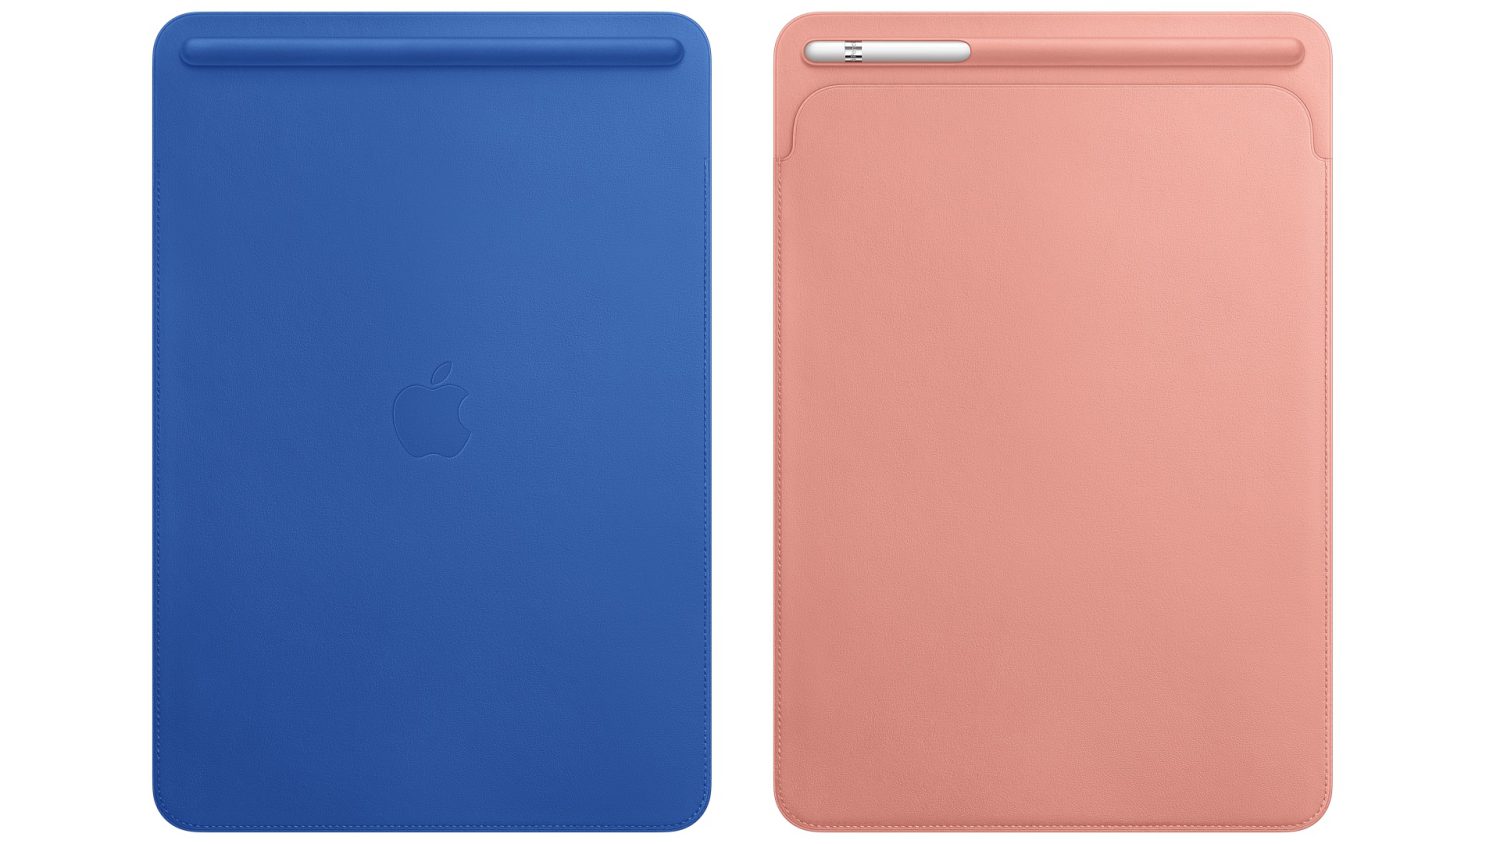 Apple lancia nuove colorazioni per i propri accessori